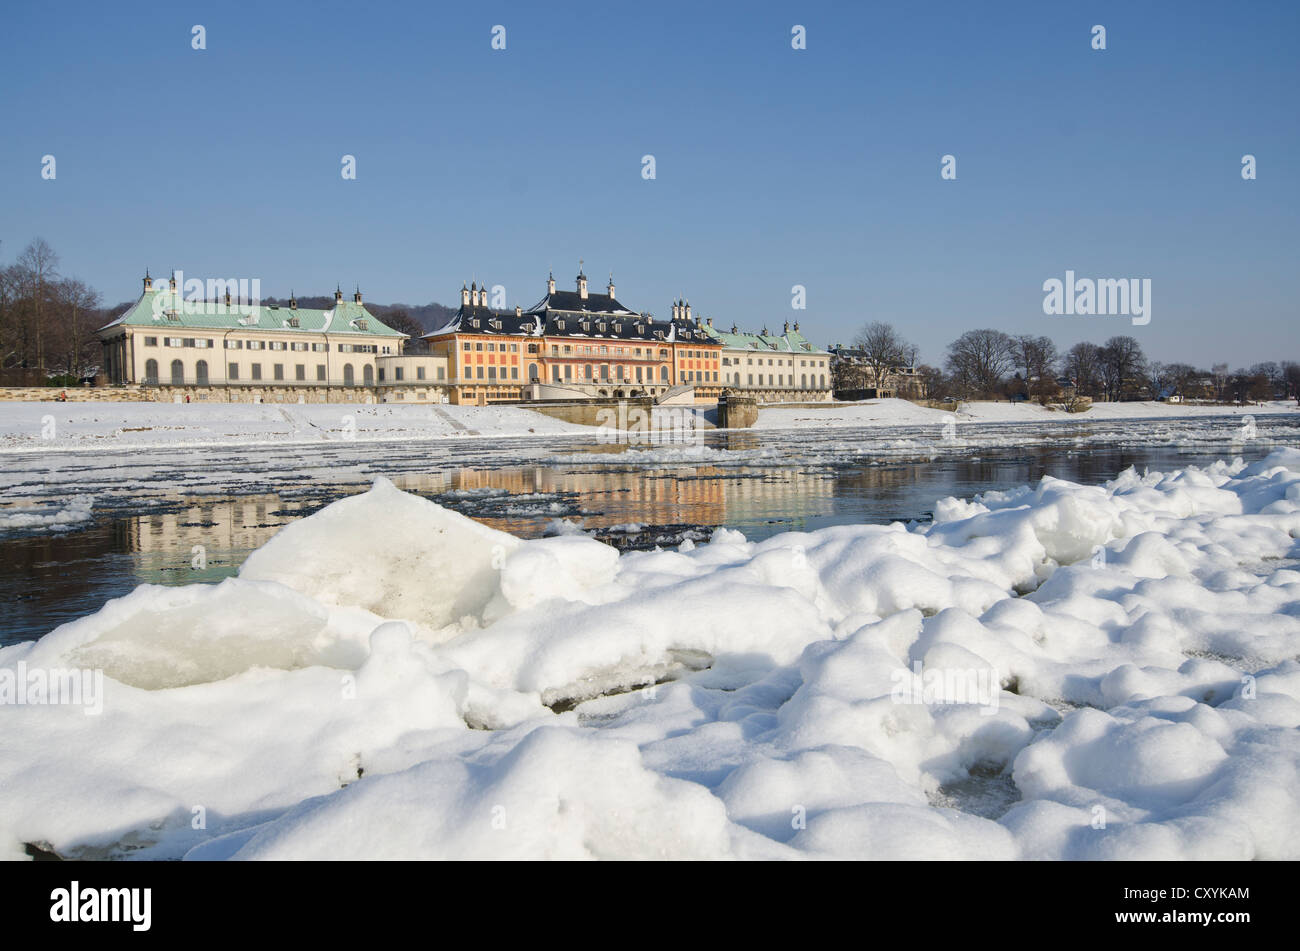 Il quasi congelate sul fiume Elba, un raro fenomeno che offre una vista spettacolare della città, Pillnitz, Dresda, Sassonia Foto Stock